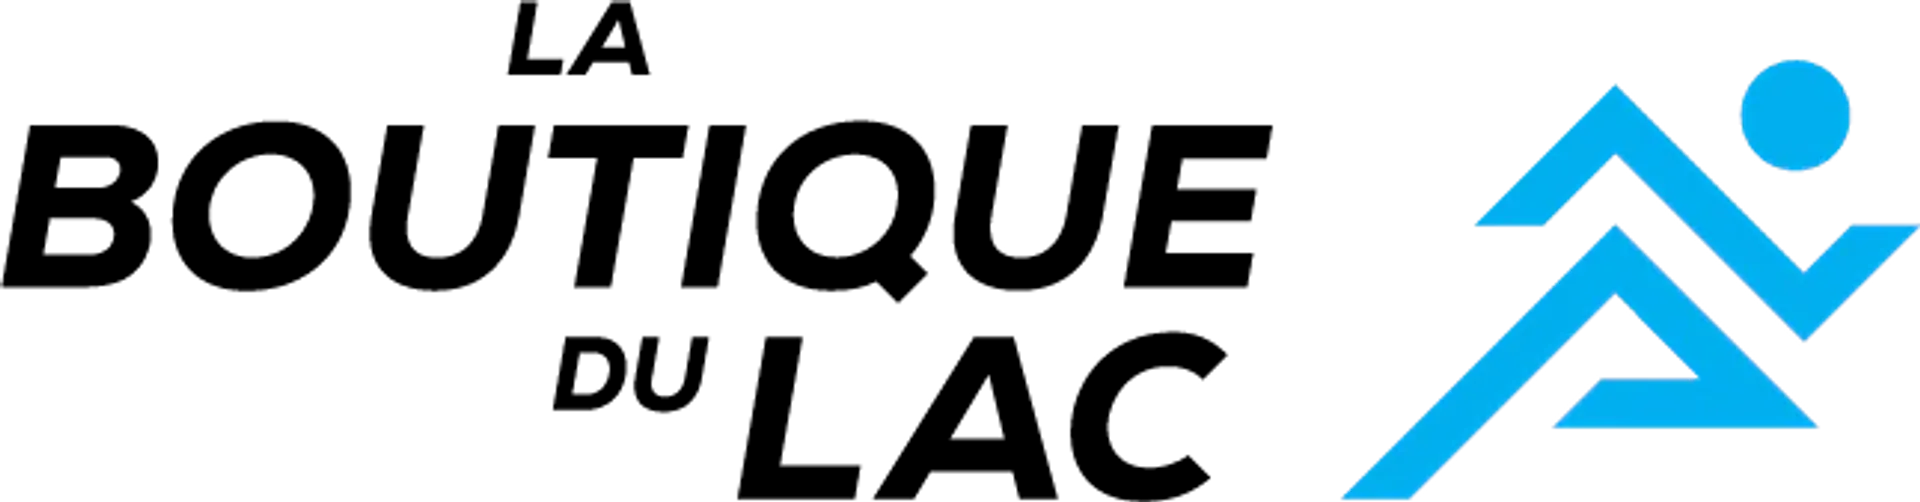 BOUTIQUE DU LAC logo de circulaire